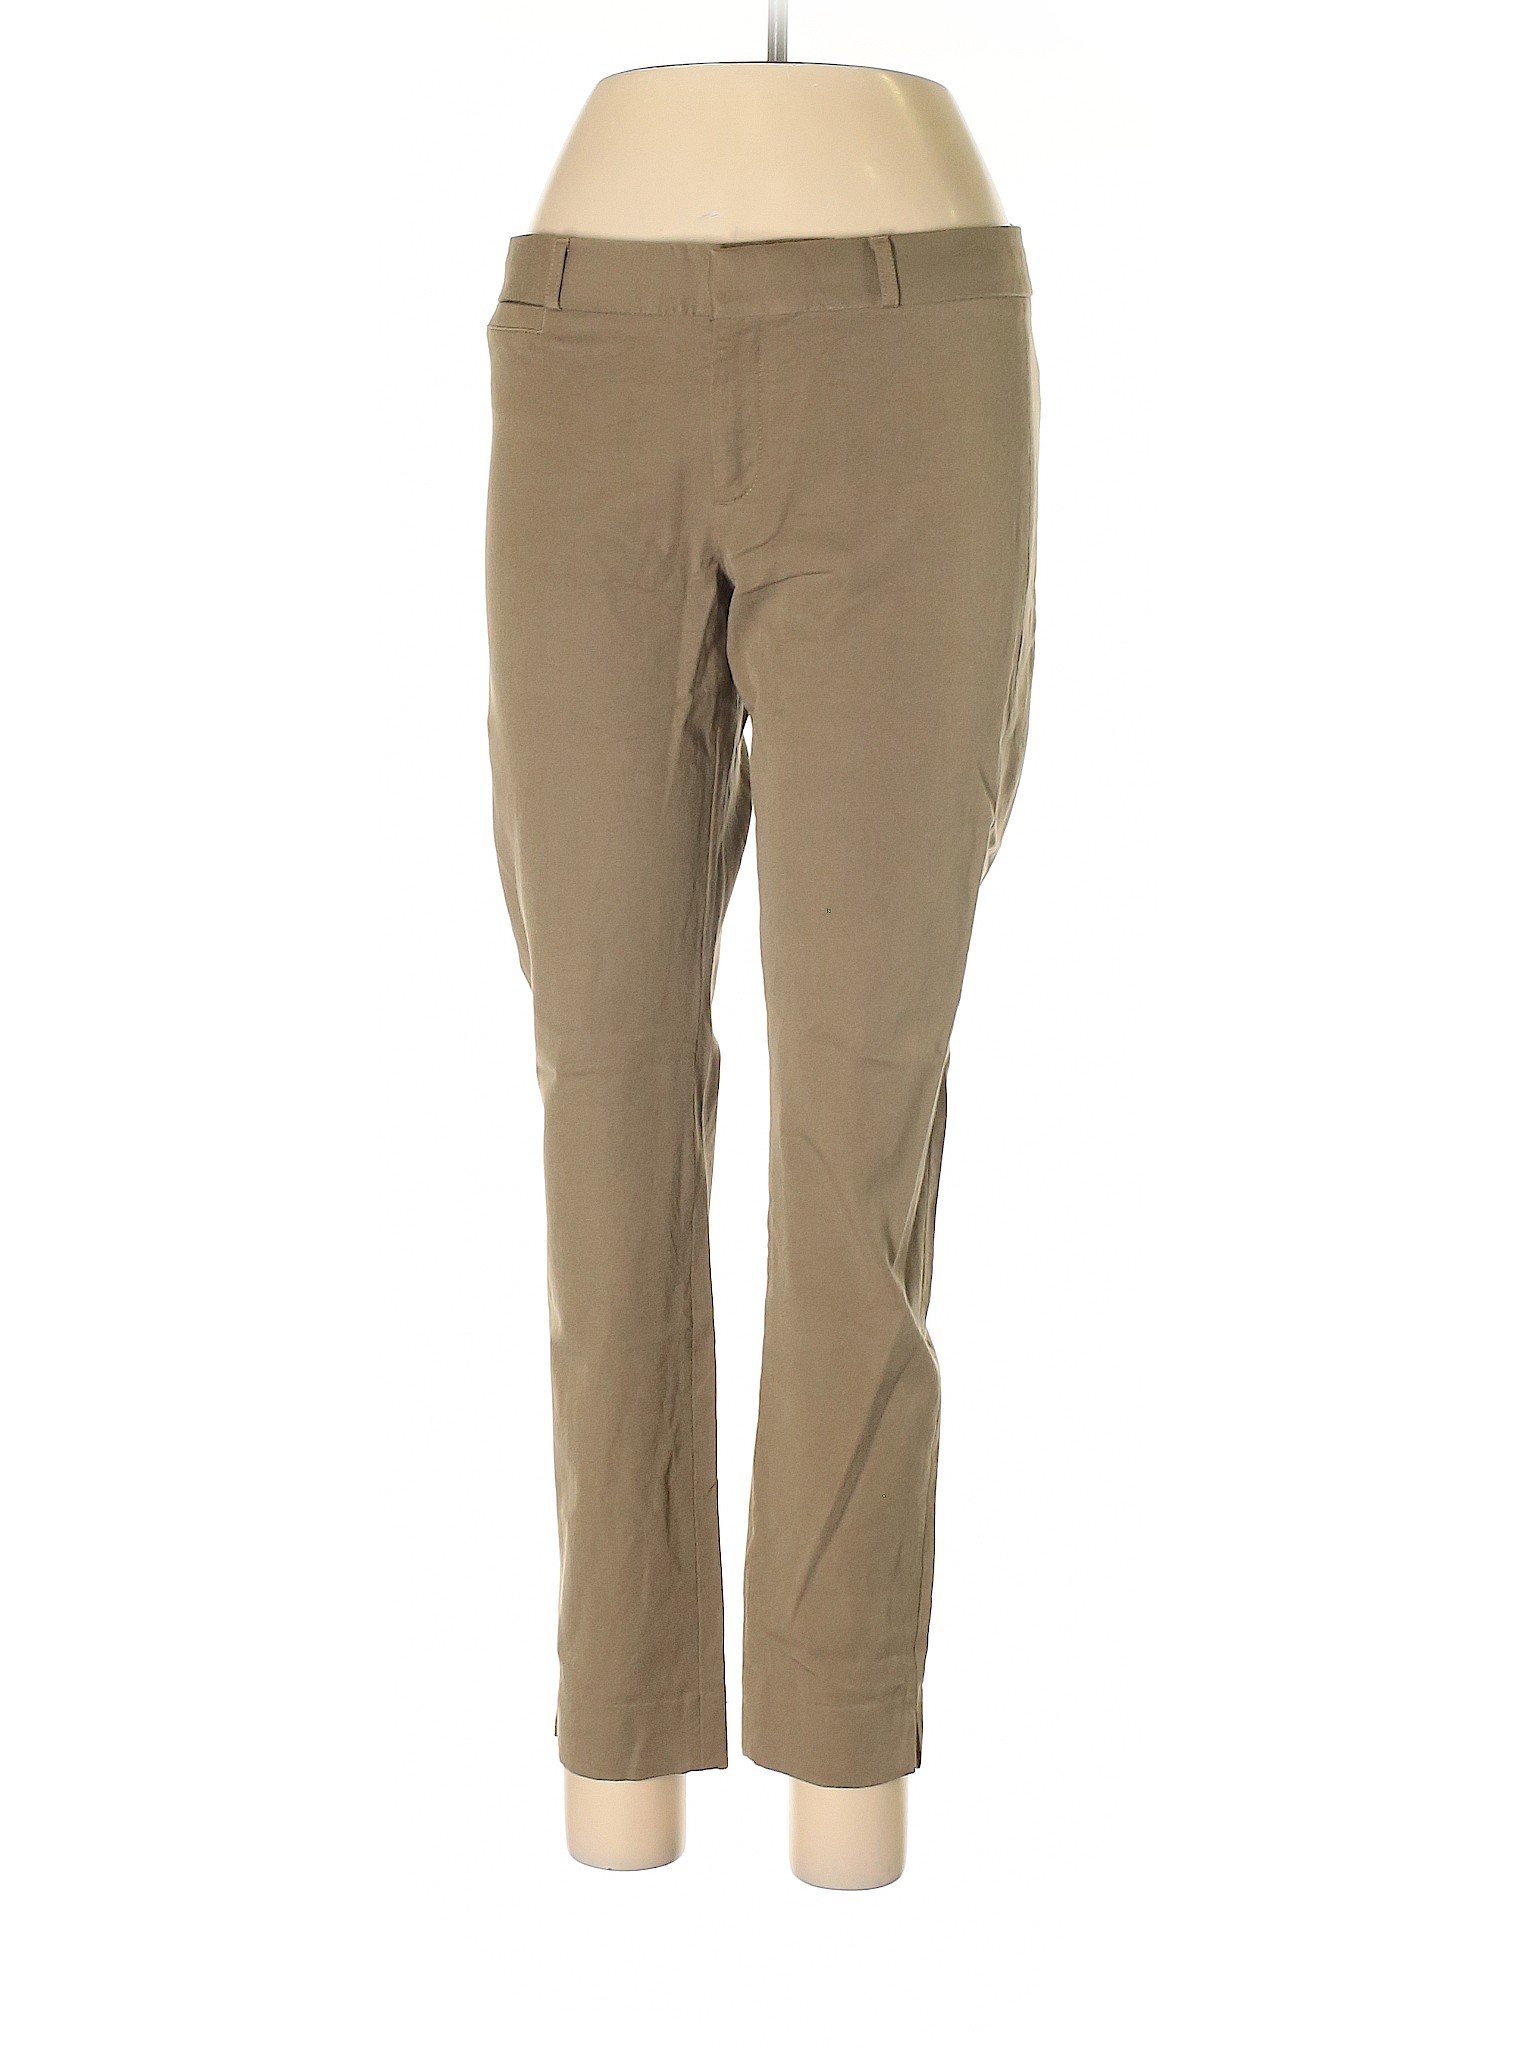 Banana Republic Women Brown Dress Pants 8 | eBay